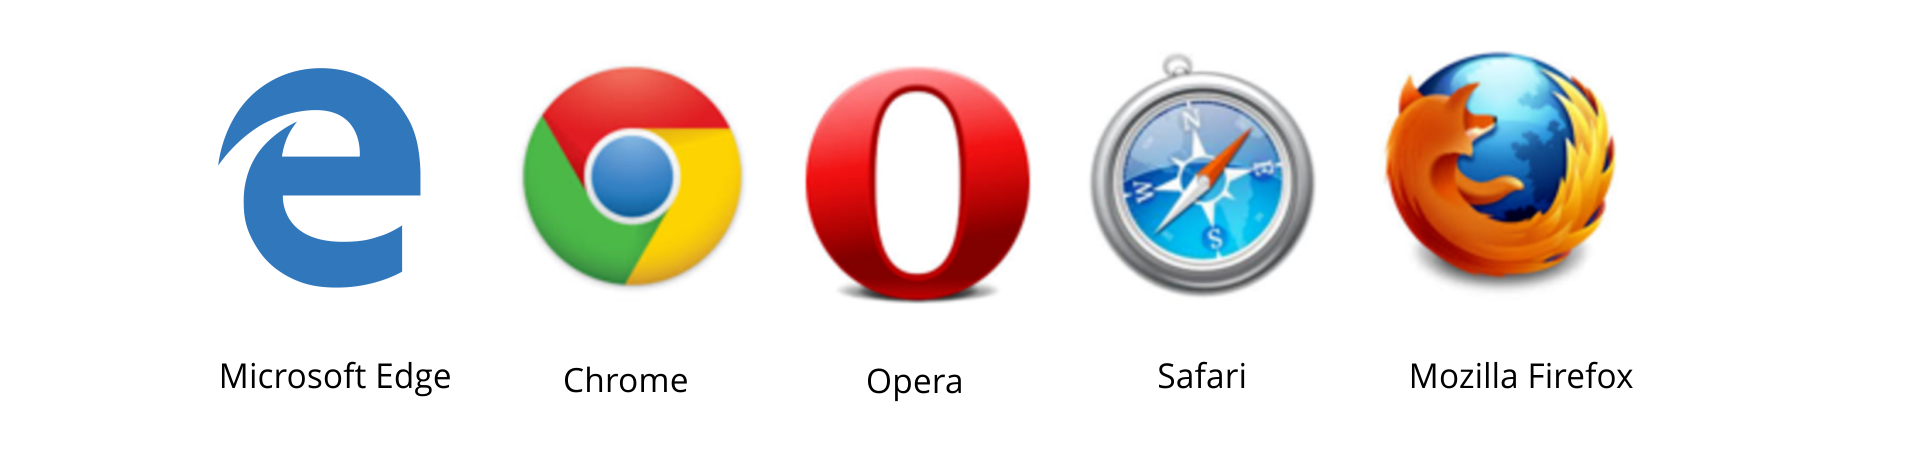 Ilustracja przedstawia loga przeglądarek. Microsoft Edge - litera e. Chrome = koło podzielone na 3 części, w środku małe małe kółko. Opera p litera O. Safarii - kompas. Mozilla Firefox - list otaczający kulę ziemską.